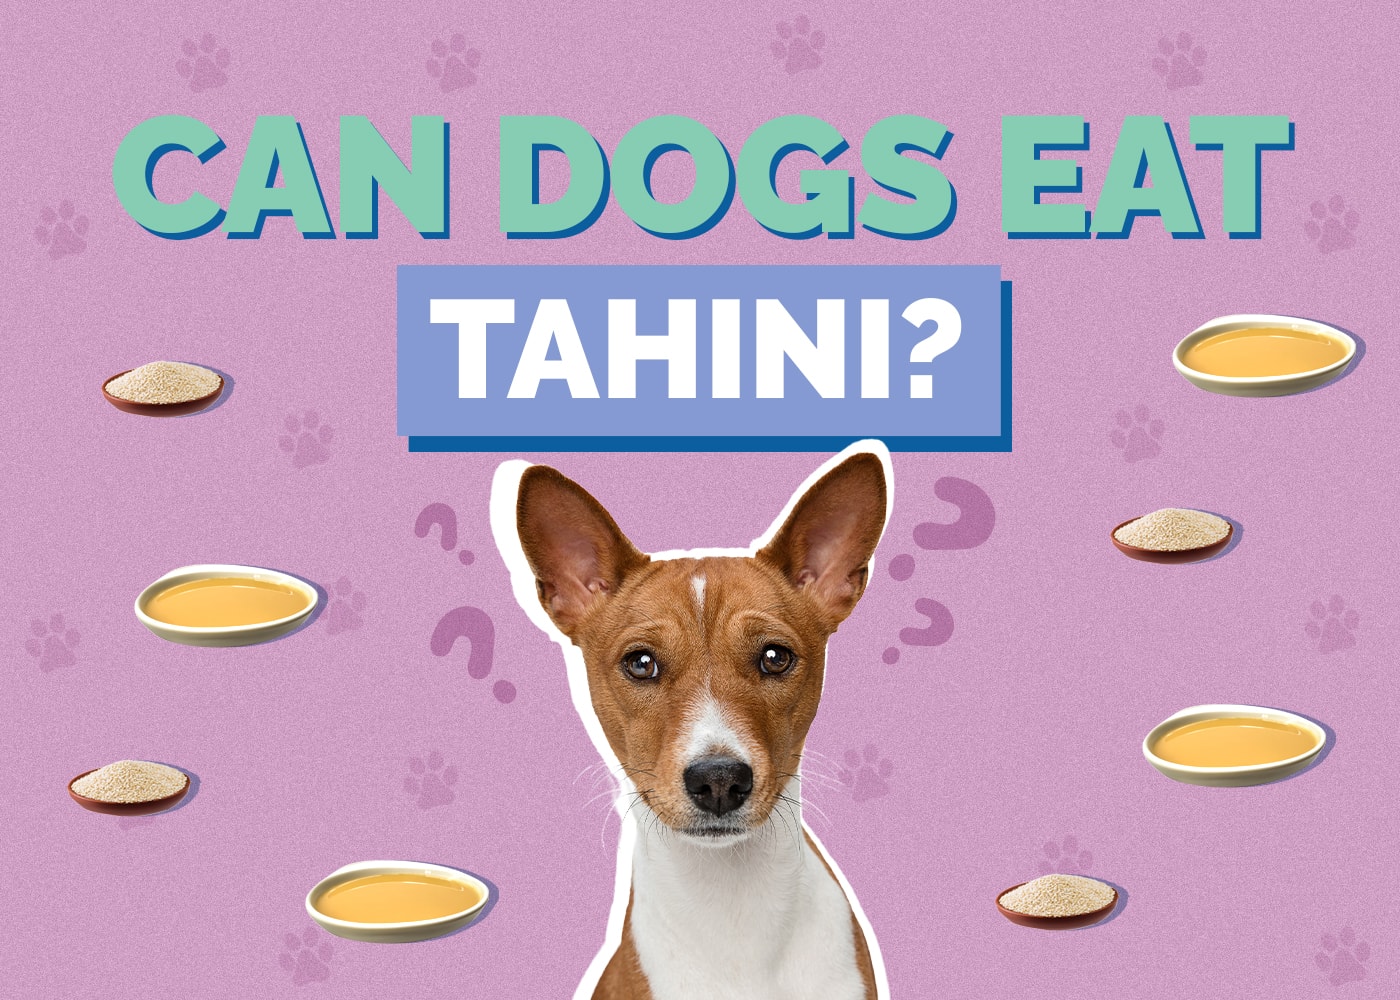 Can Dogs Eat Tahini